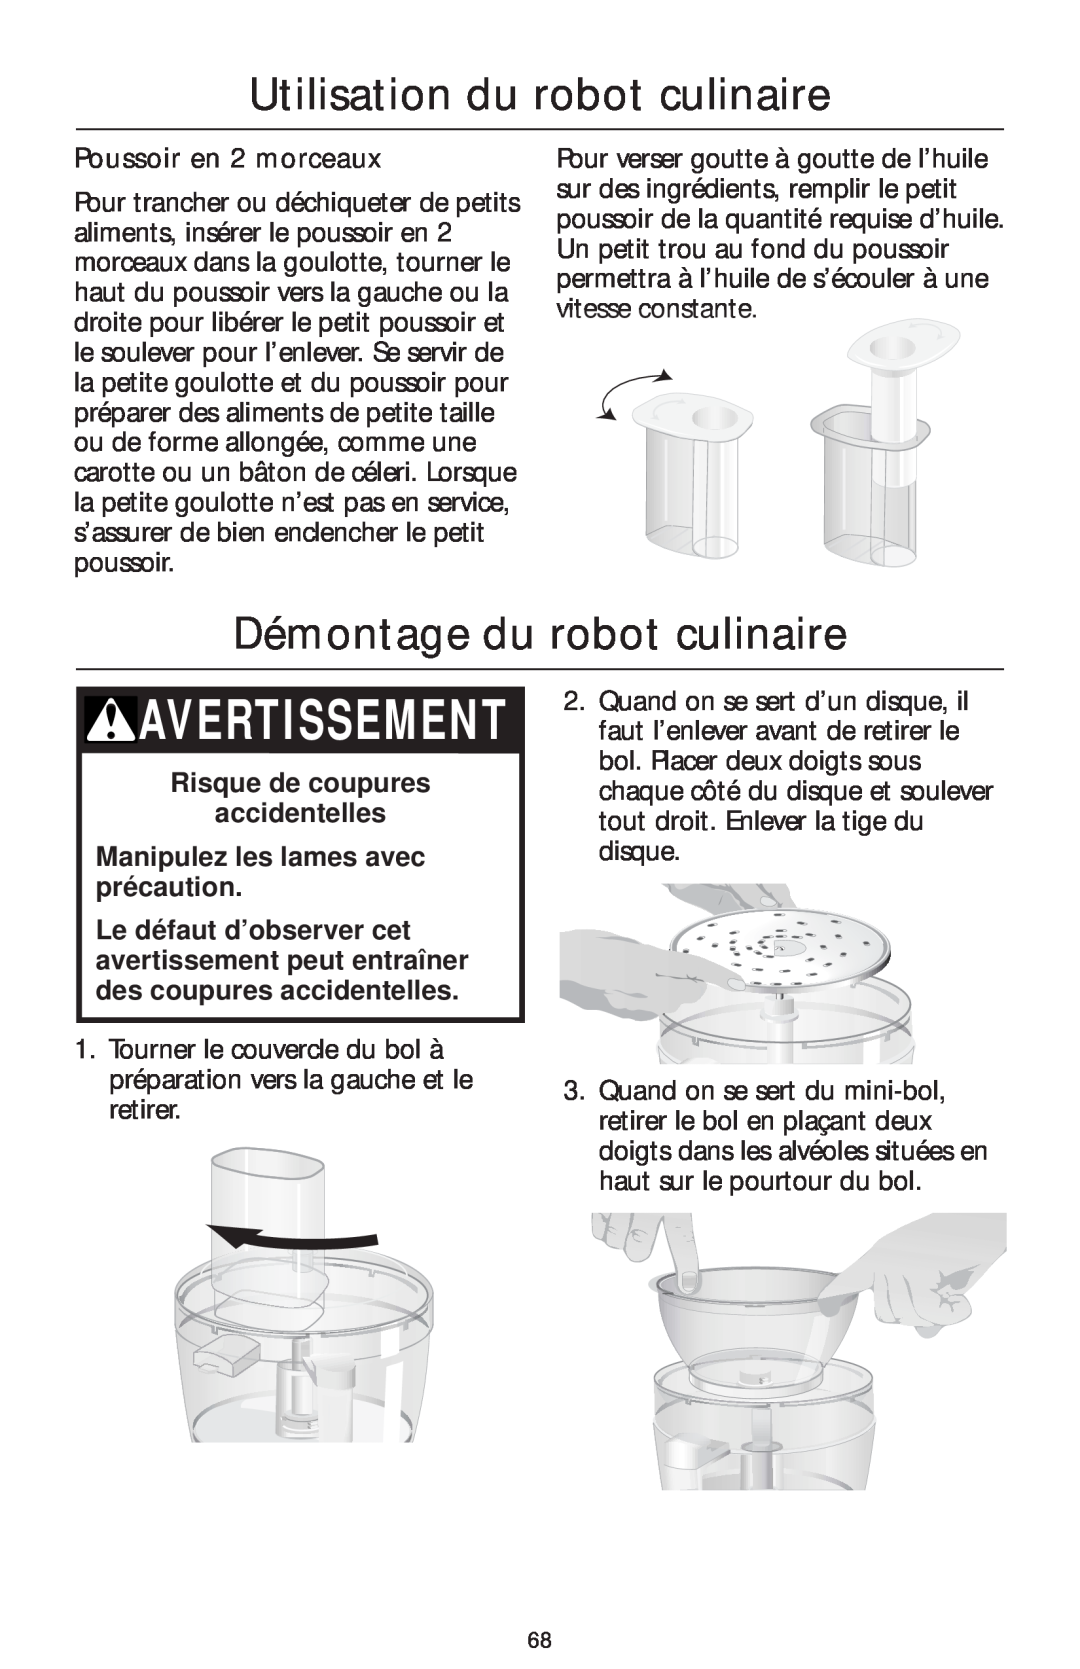 KitchenAid 4KFP750 Démontage du robot culinaire, Poussoir en 2 morceaux, Avertissement, Utilisation du robot culinaire 